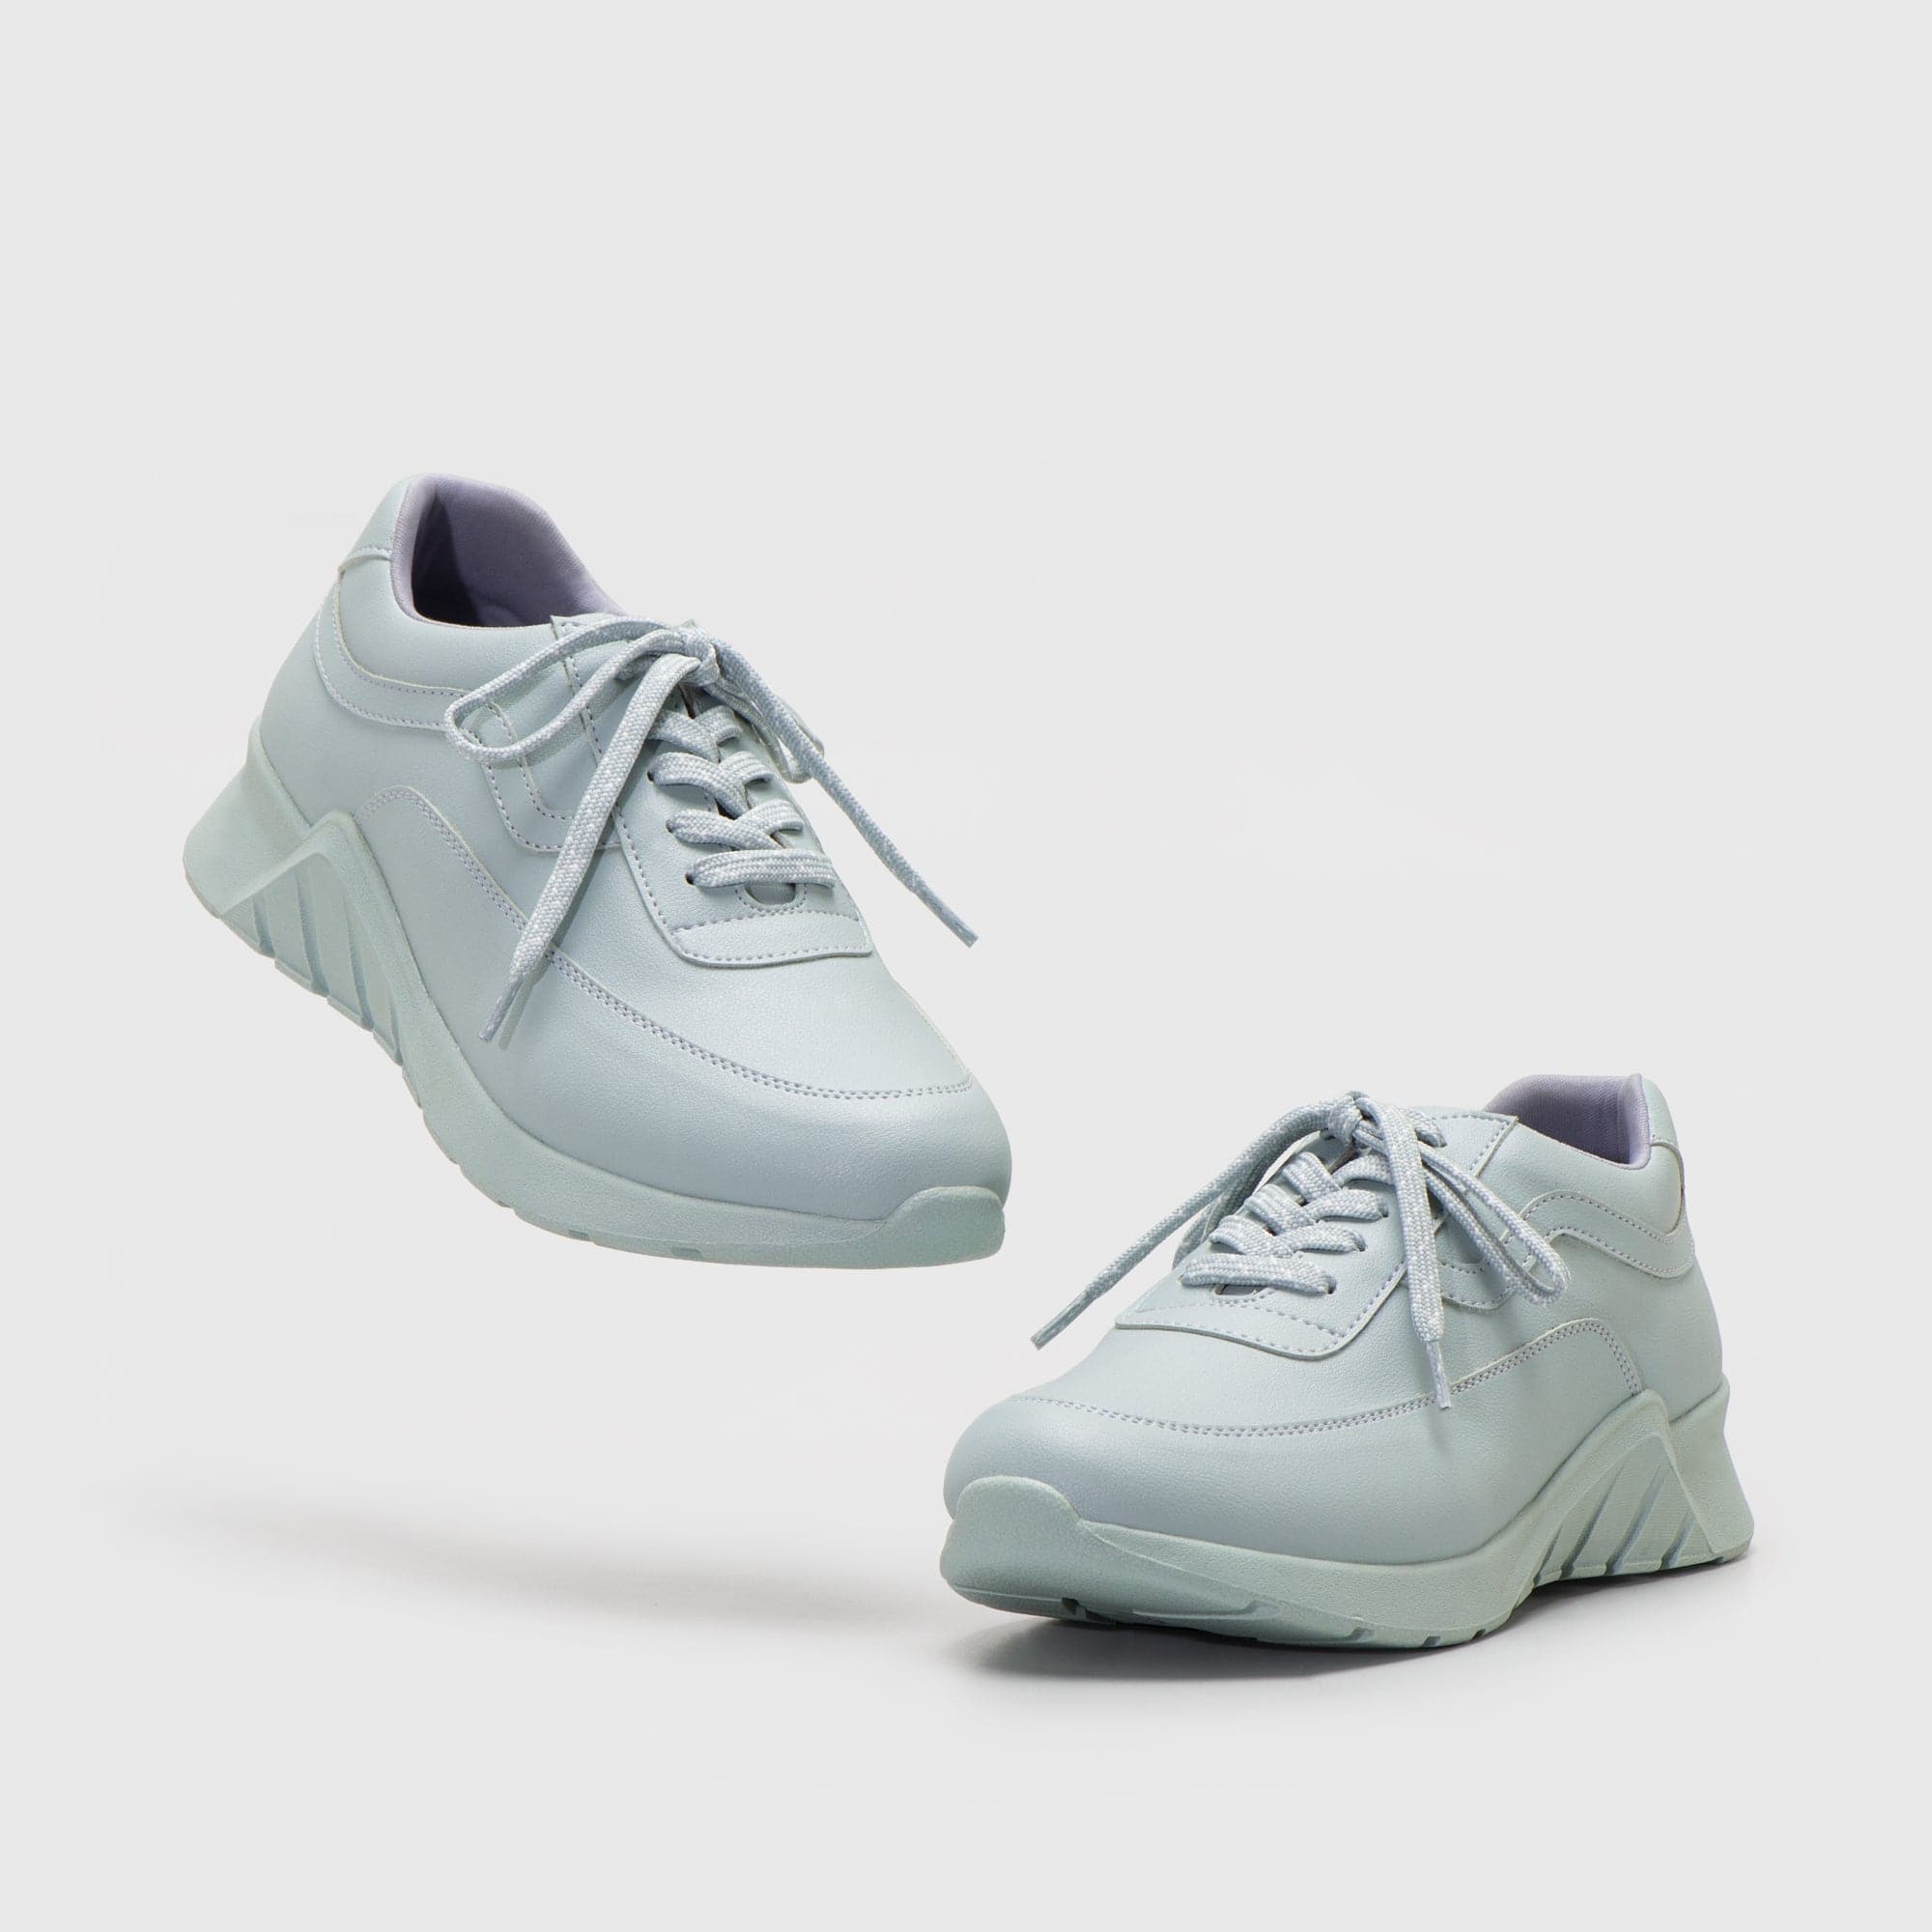 Adorable Projects-Dev Sneakers Kikimora Sneakers Light Blue